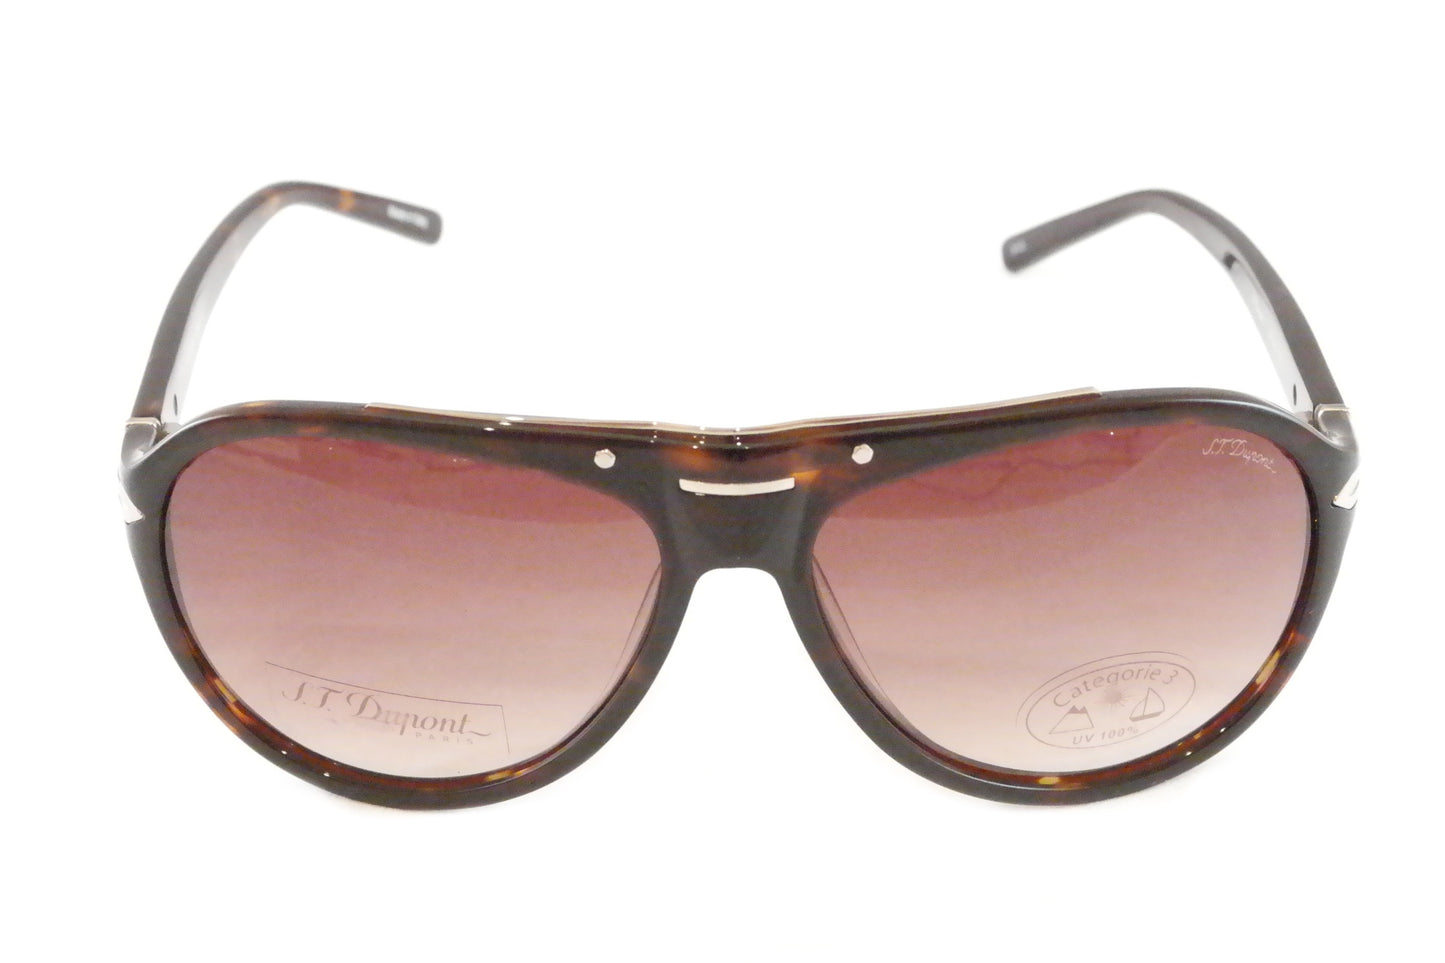 S. T. Dupont Sunglasses ST003 Plastic Italy 100% UV Category 3 Lenses 59-15-140 - Frame Bay